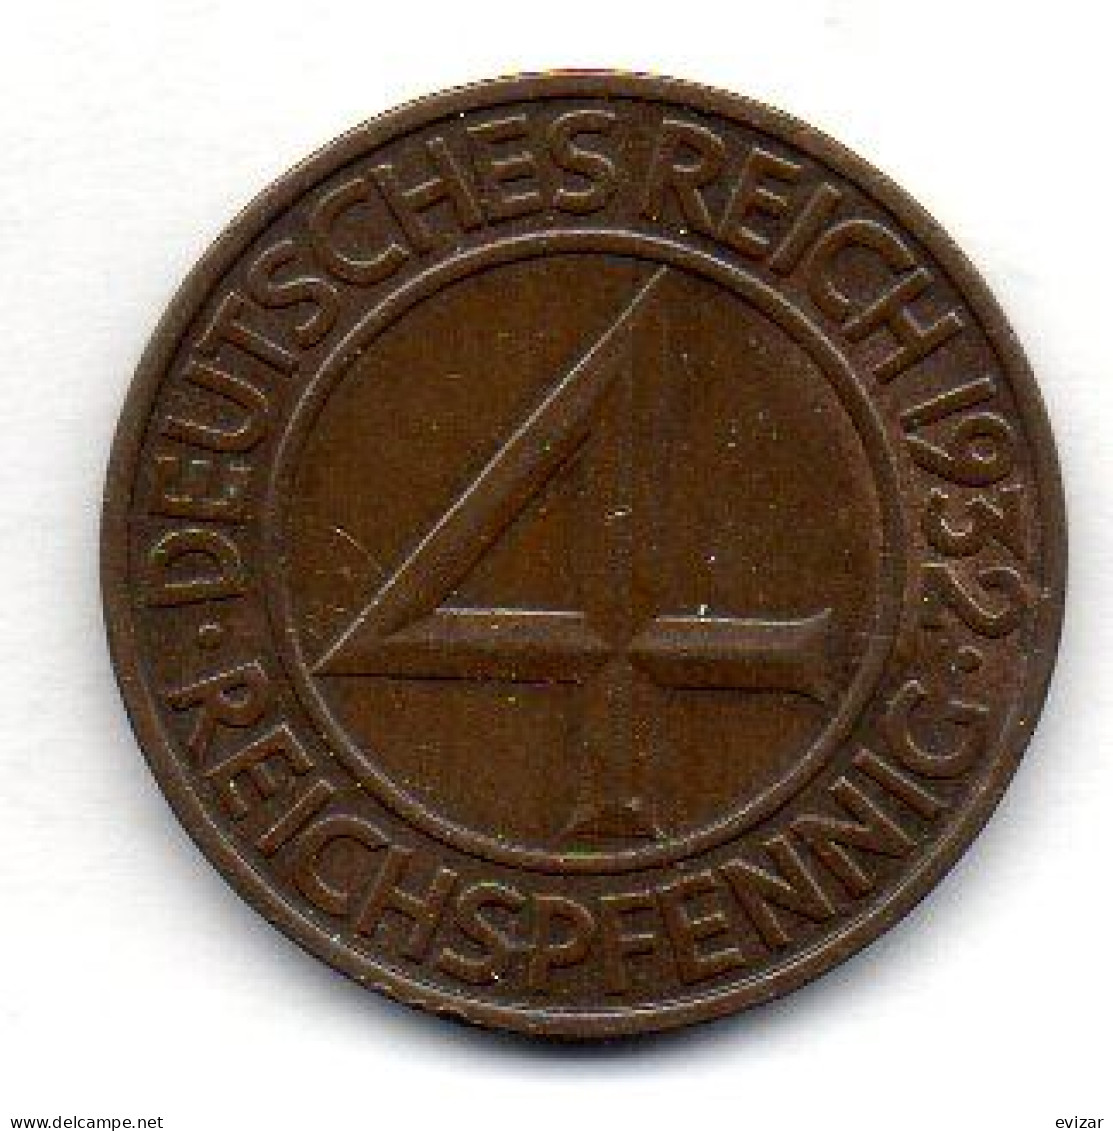 GERMANY - WEIMAR REPUBLIC, 4 Reichs Pfennig, Bronze, Year 1932-F, KM # 75 - 4 Reichspfennig